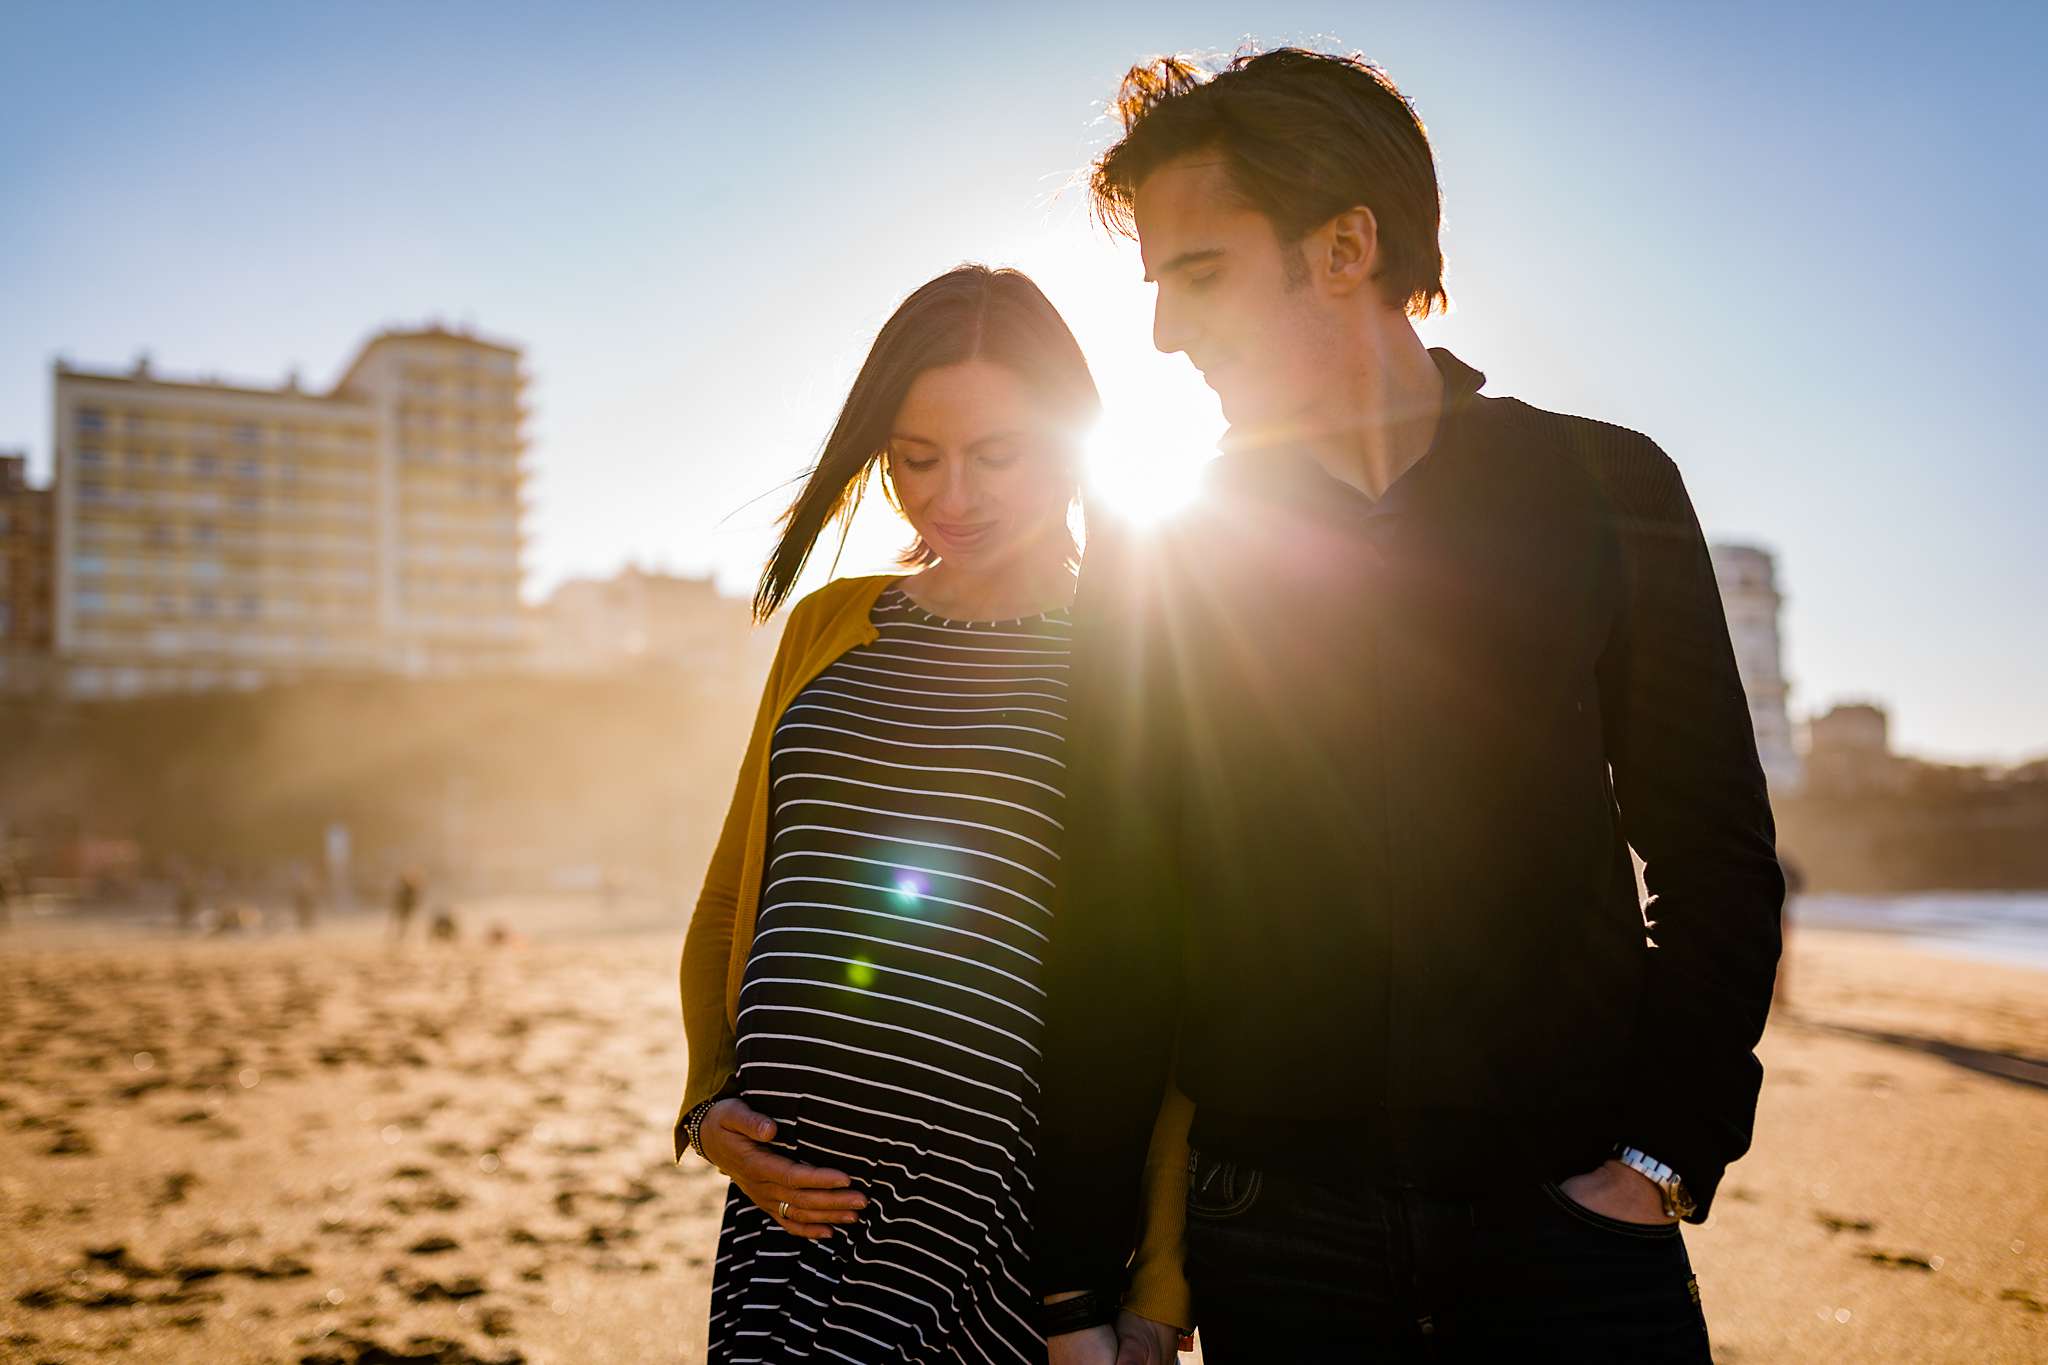 Les photos de grossesse et couple de Sophie et Rodolphe, à Biarritz Pays Basque ! Après sont EVJF il y a quelques années, voici Sophie enceinte. C'est beau. :)